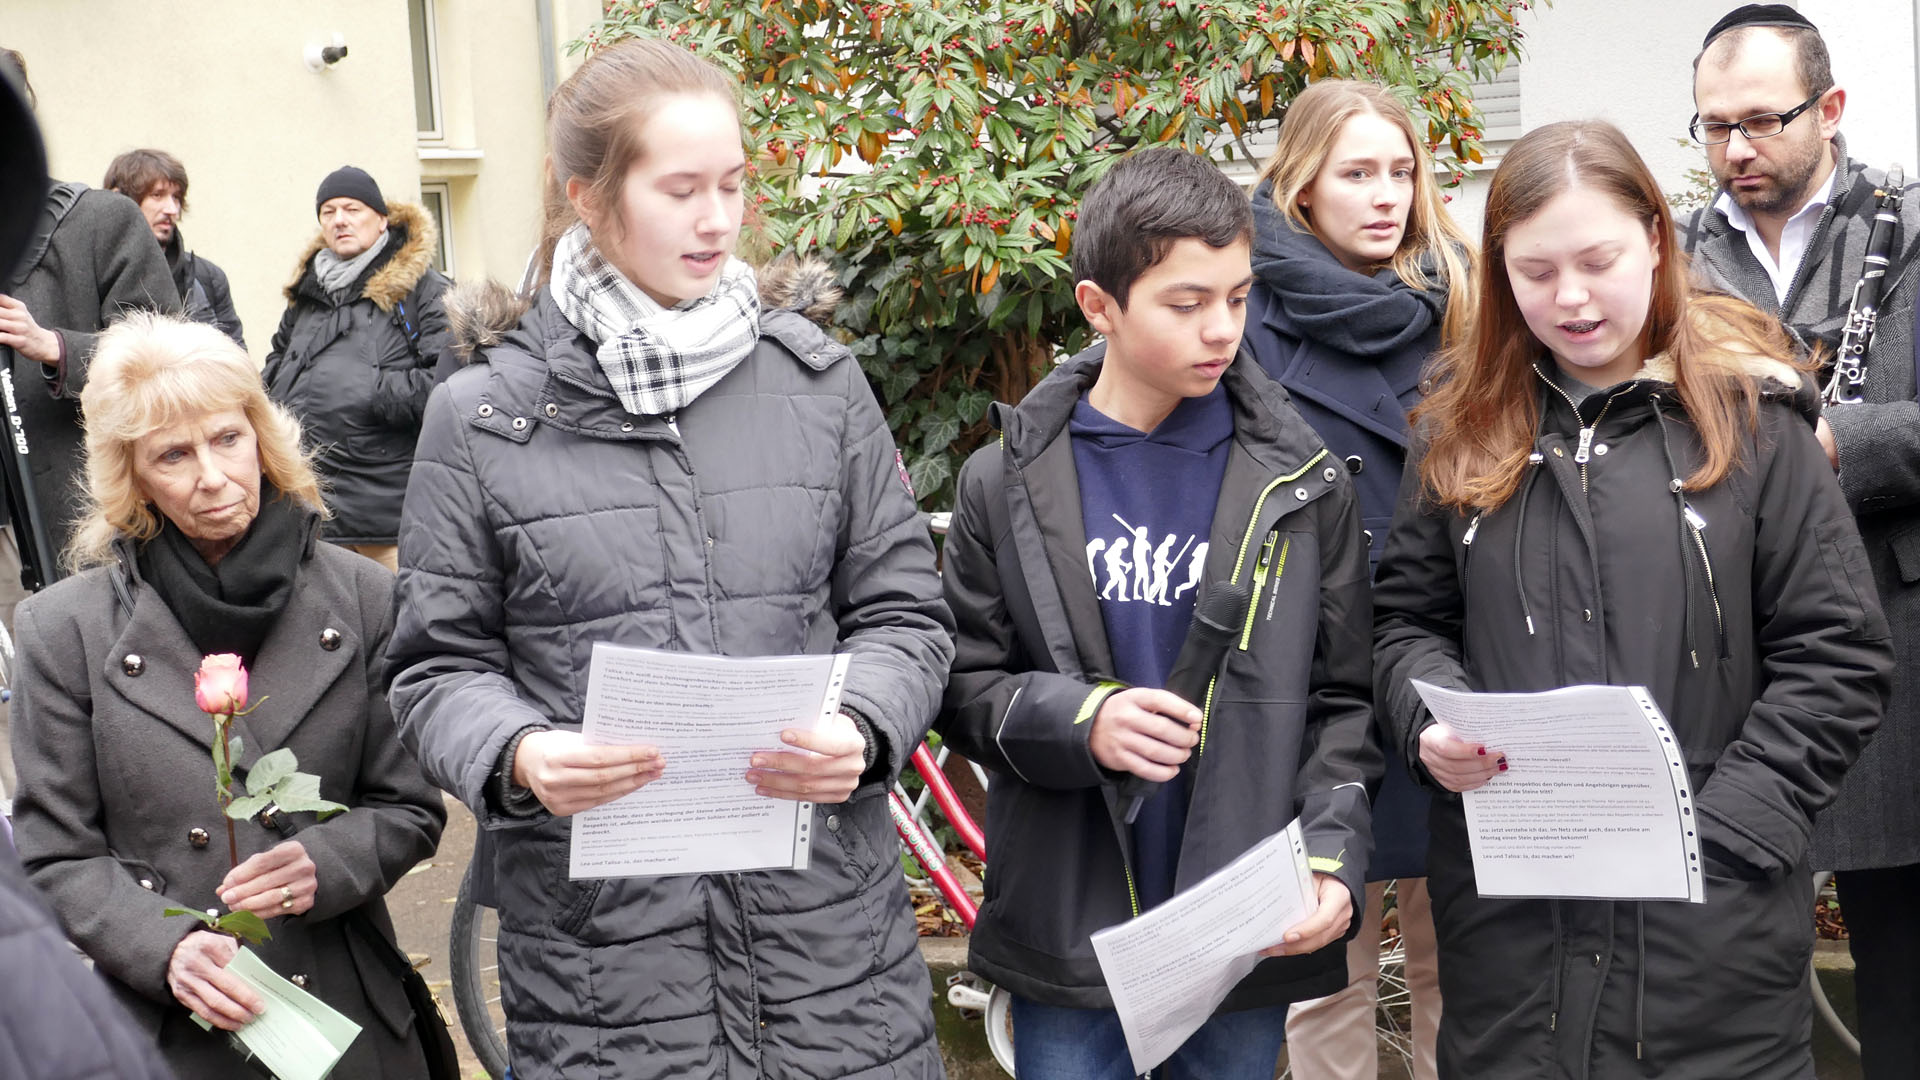 Die drei Schüler der Anne-Frank-Schule – links neben ihnen steht Denise Stanaland mit einer Rose